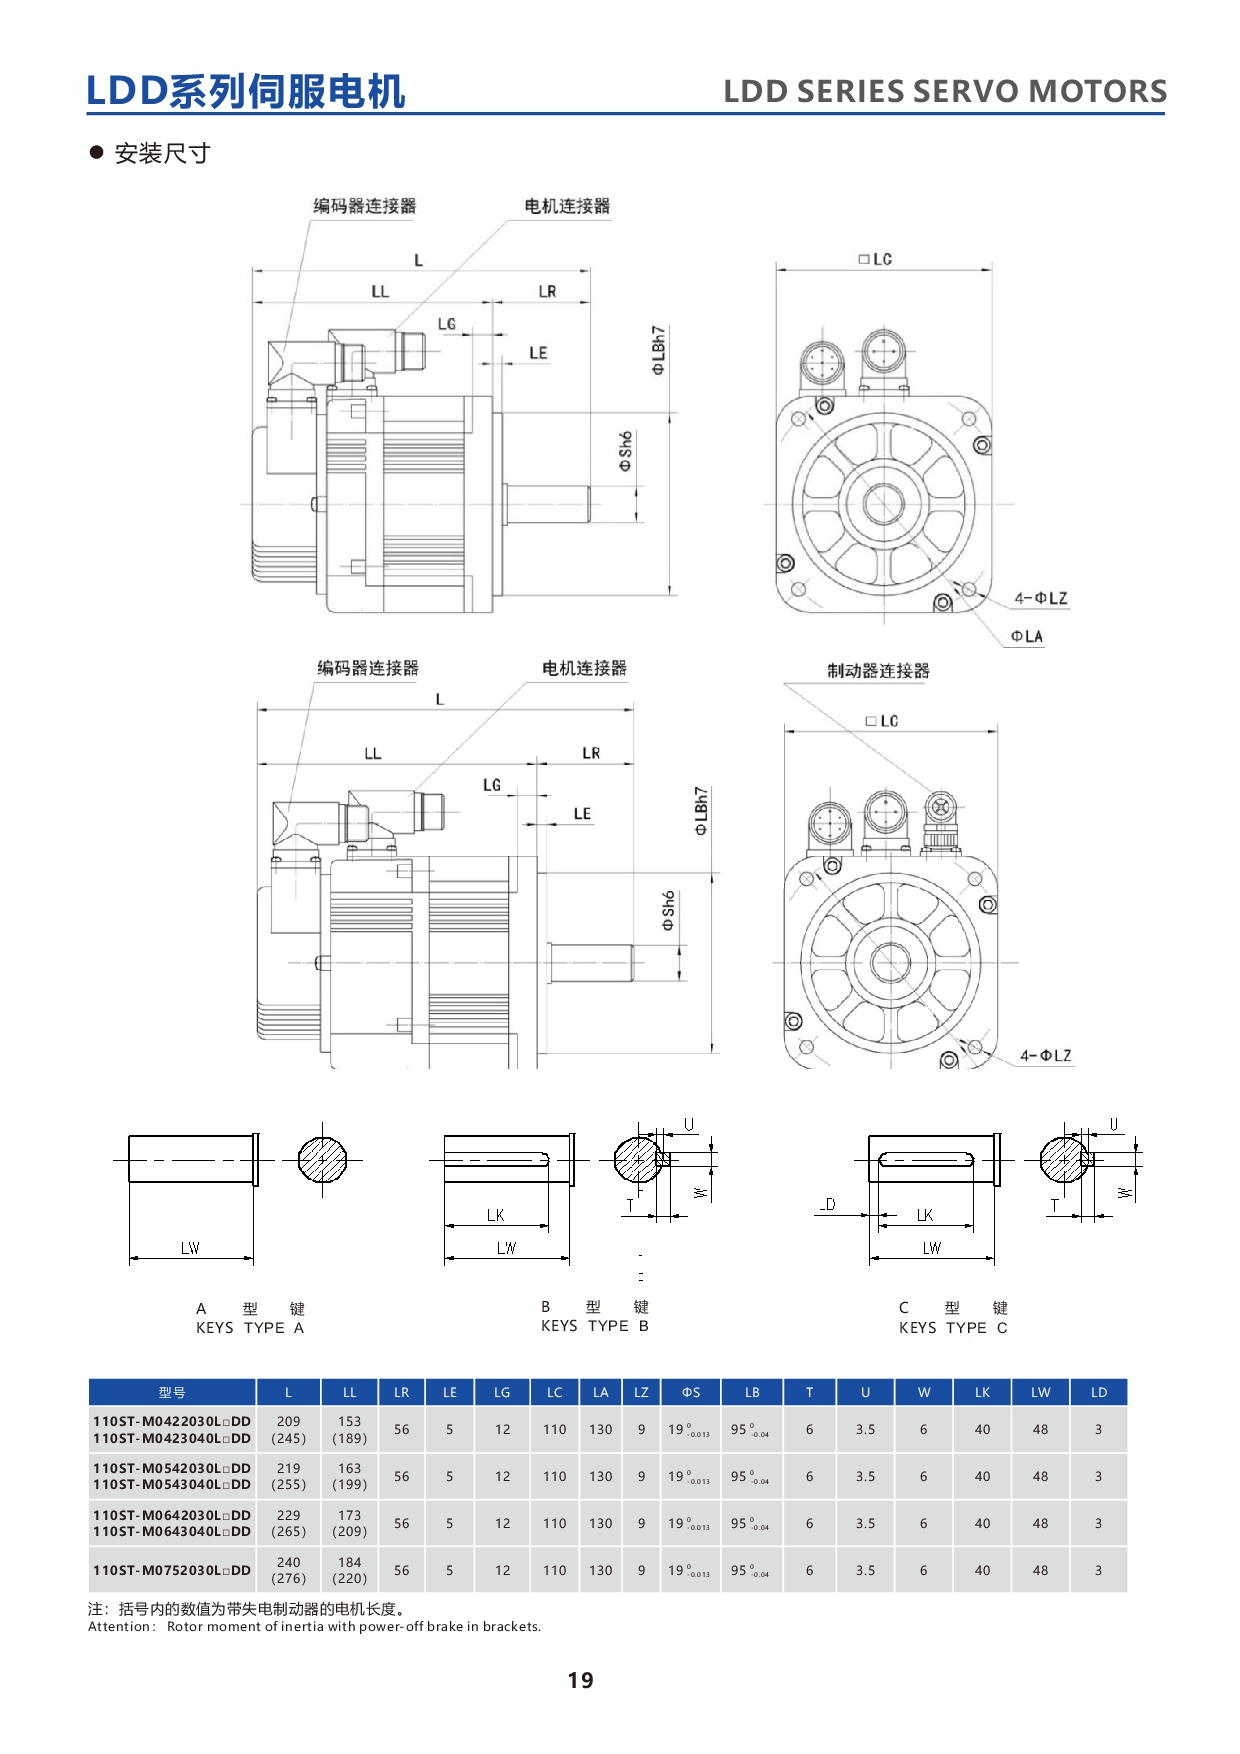 产品特性-17-LDDseries110STservomotor